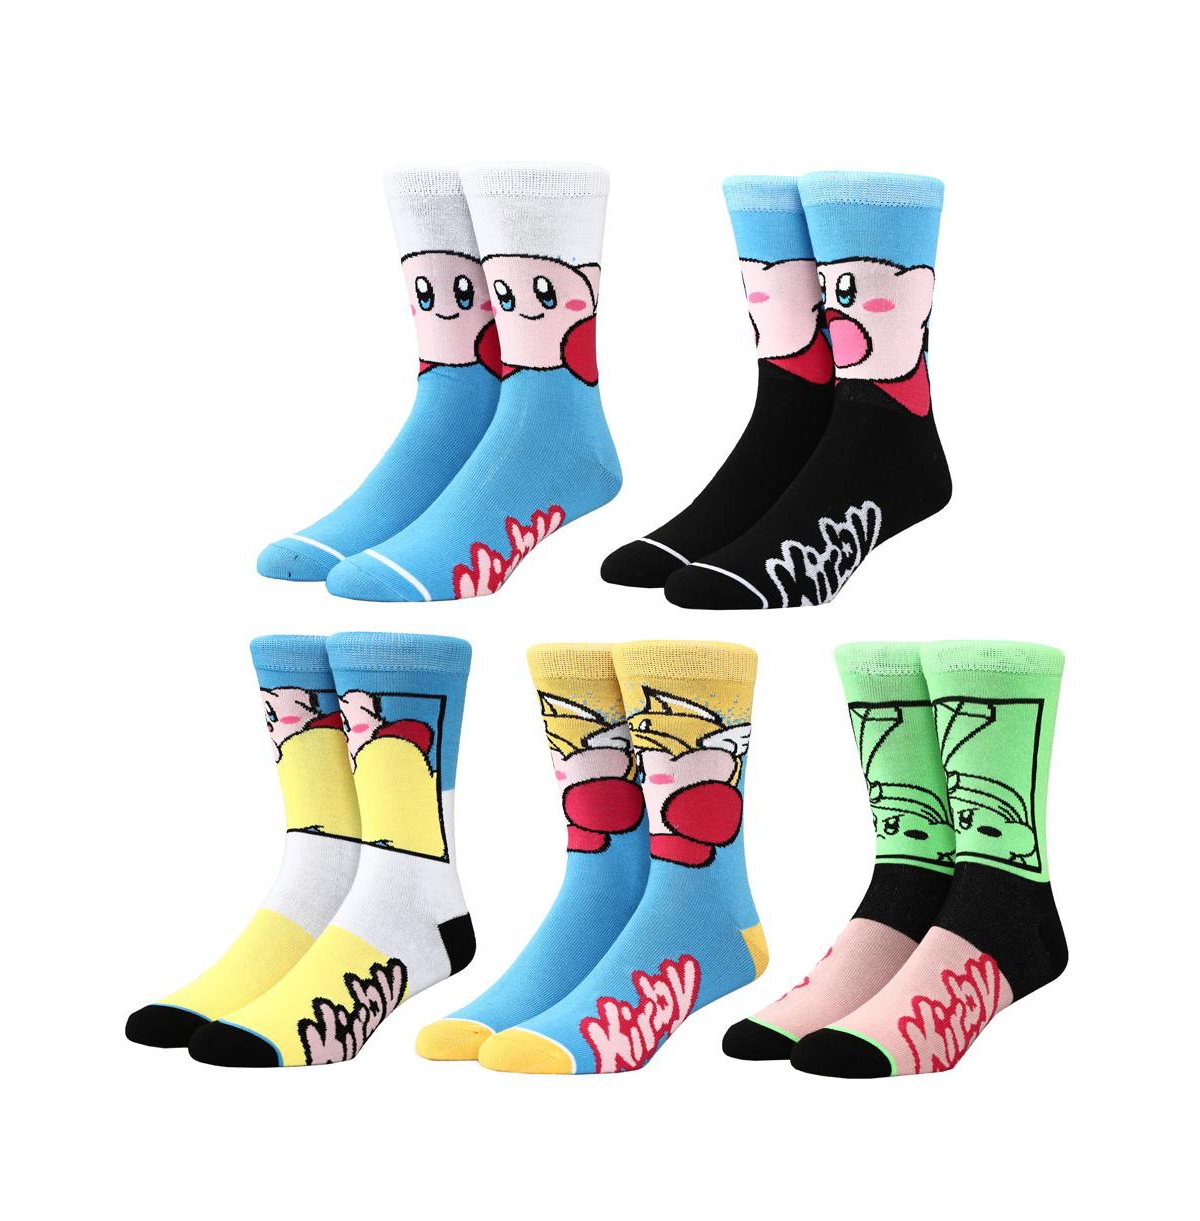 Men's Casual Crew Socks Set for Men 5-Pair Pack - Multicolored